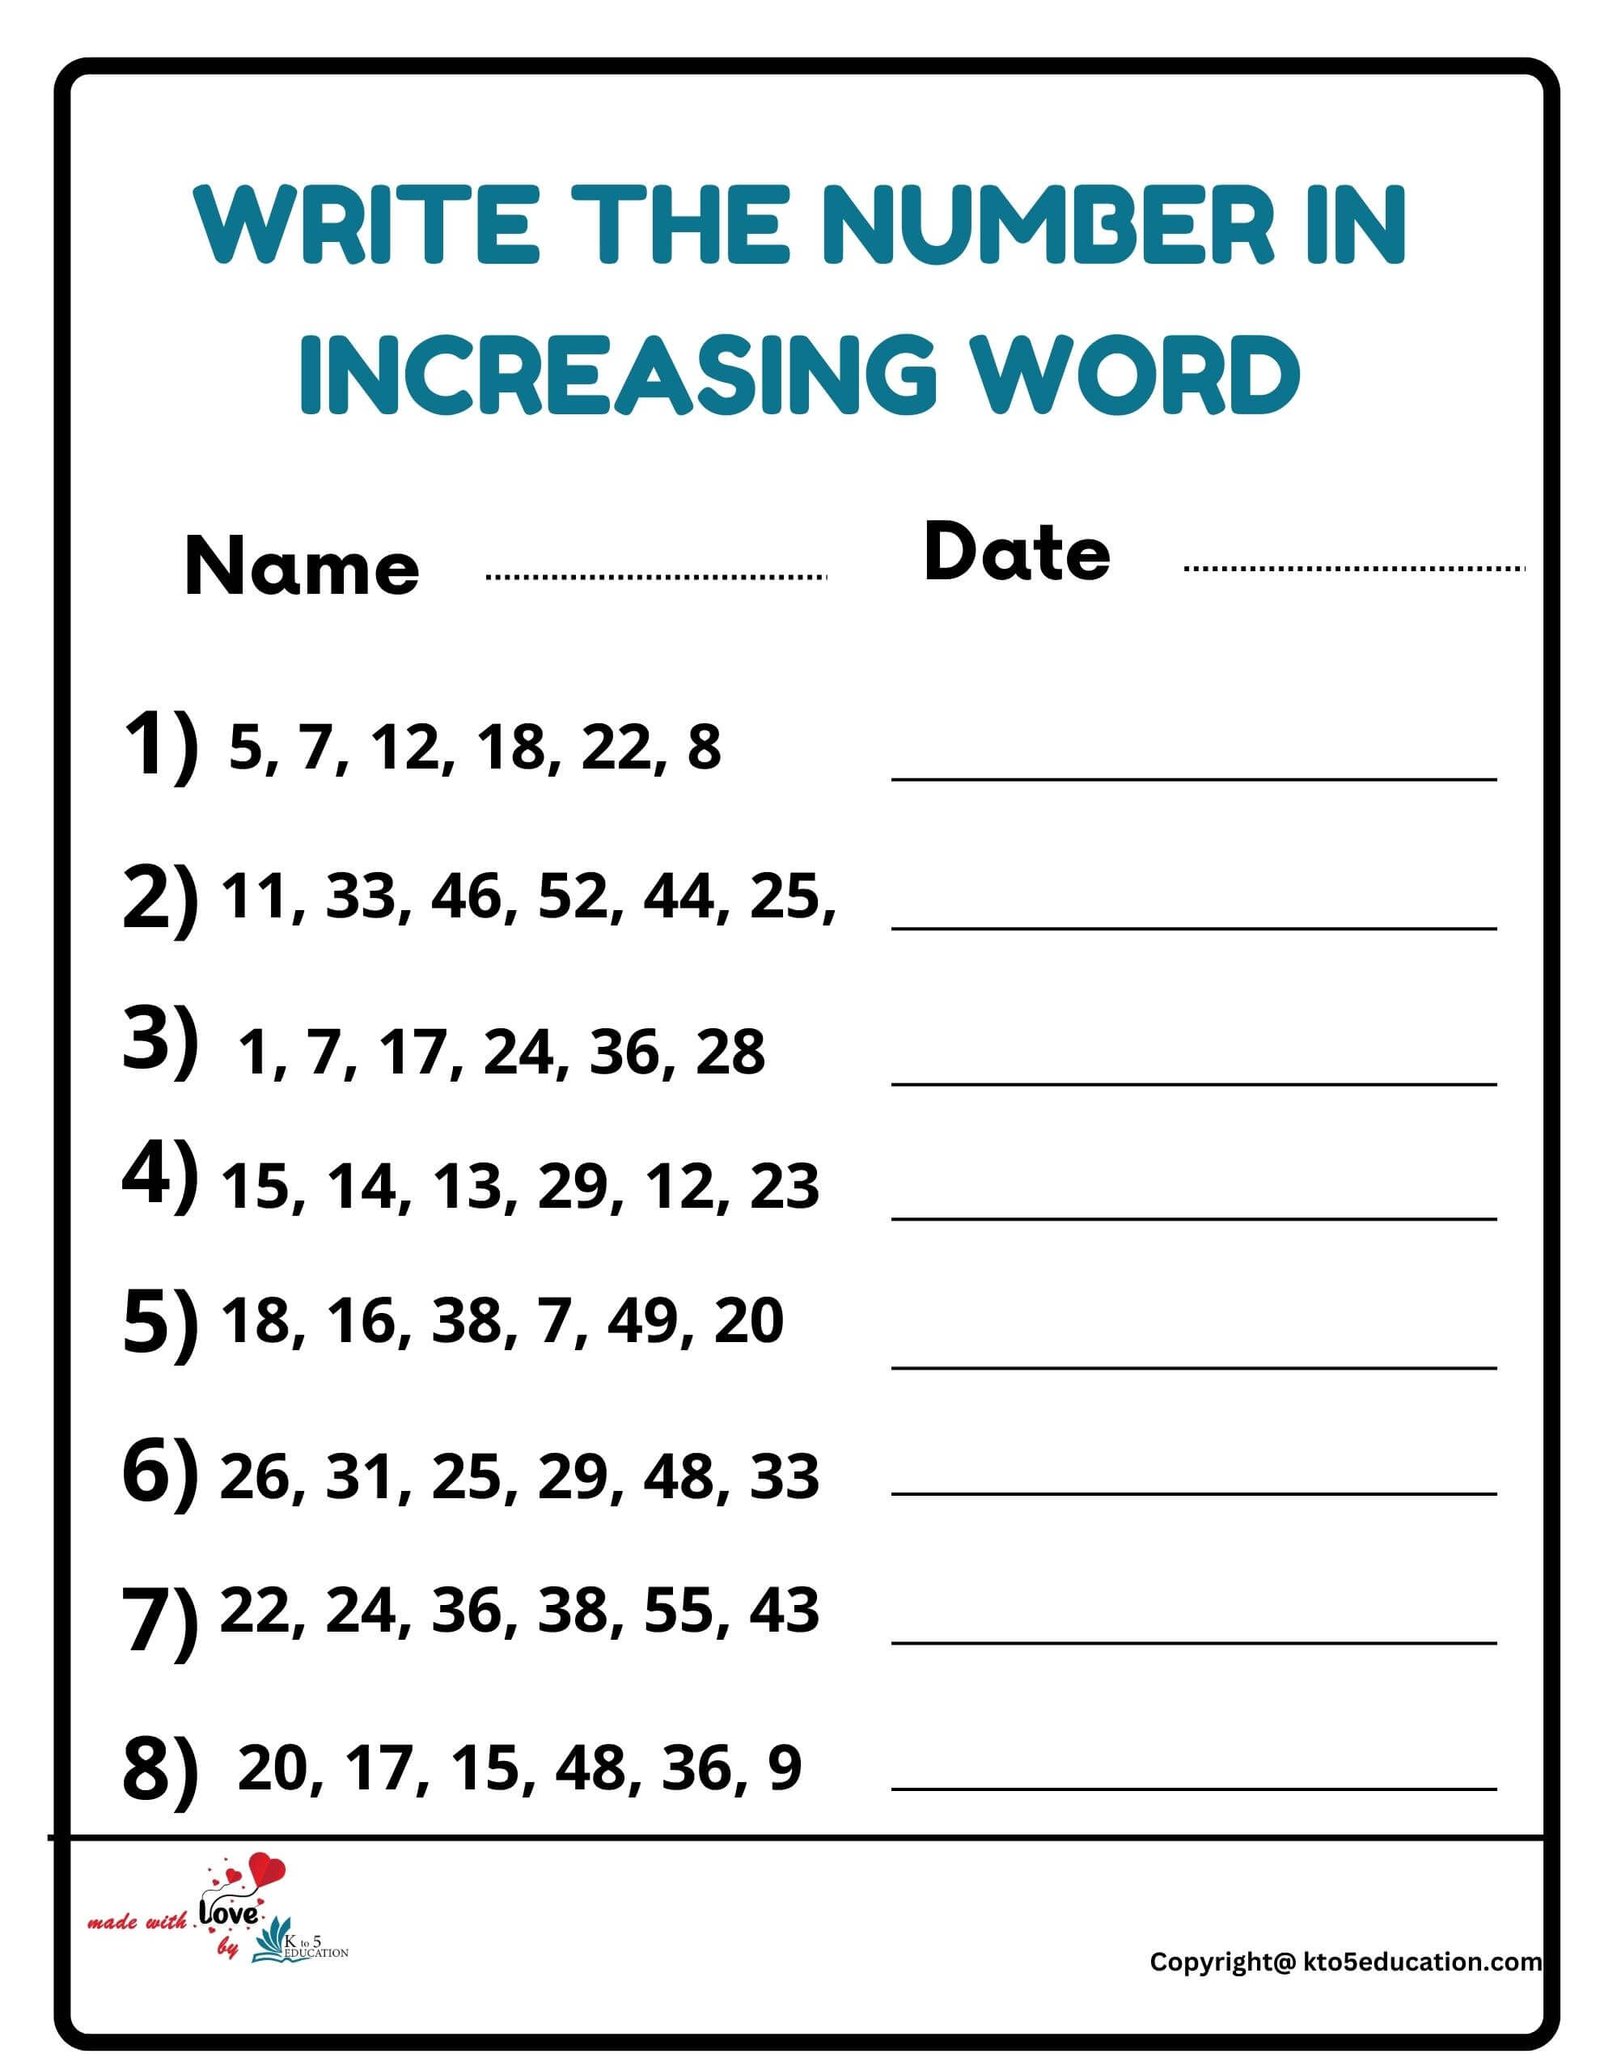 Write The Number In Increasing Word Worksheet